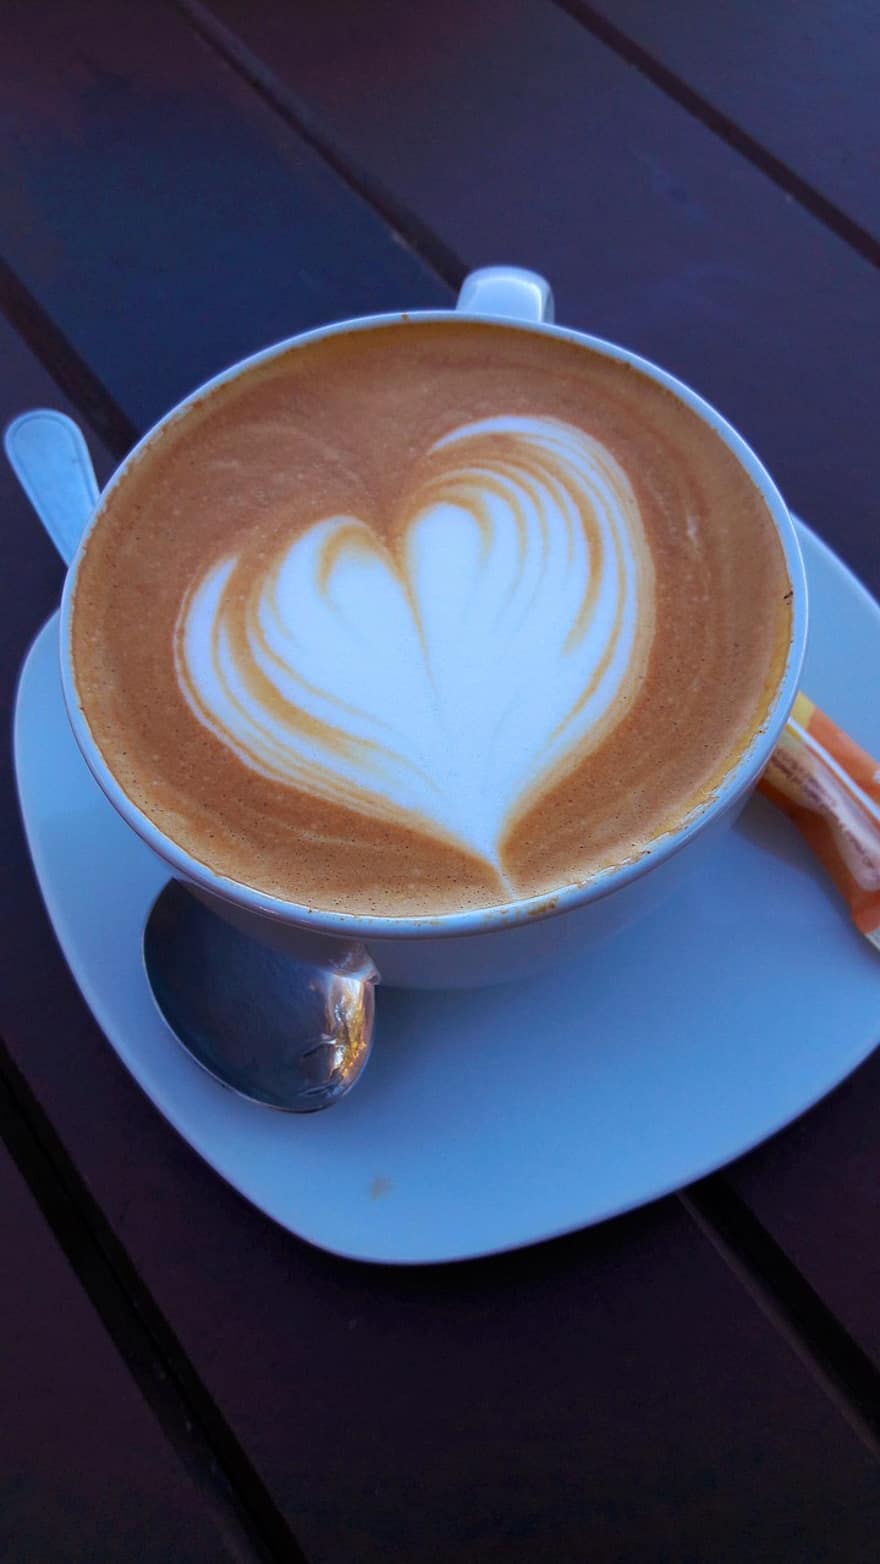 καφές, latte art, ποτό, λάτε, εσπρέσο, καφεΐνη, φλιτζάνι, καφενείο